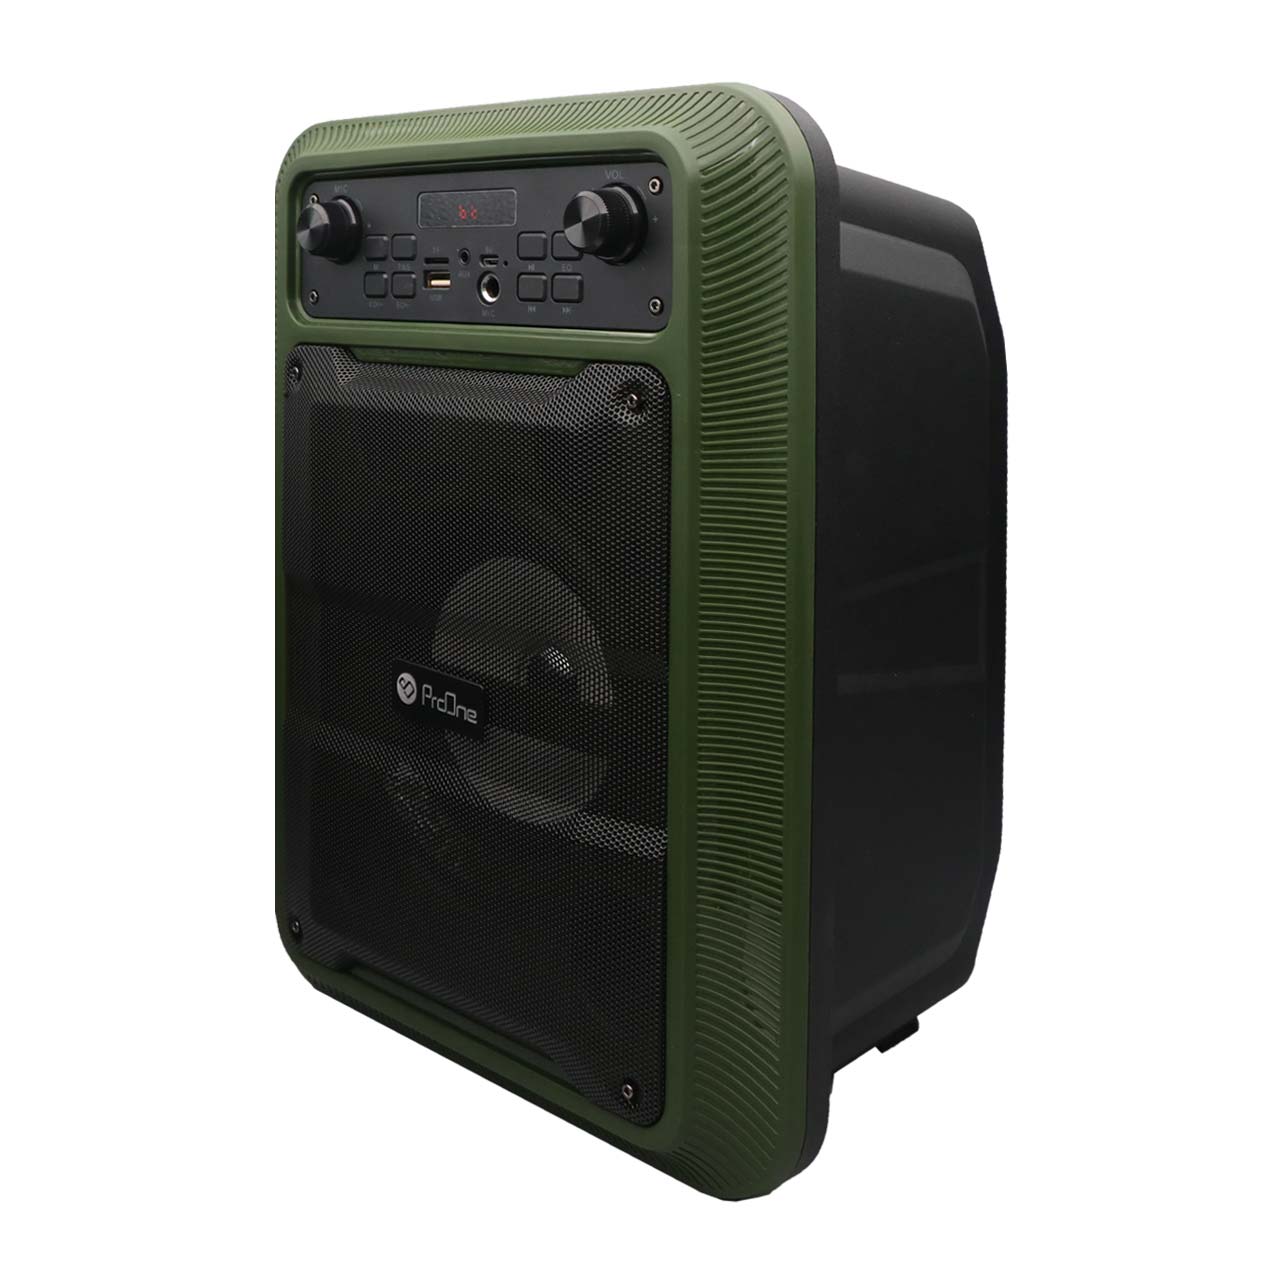 اسپیکر پرتابل ProOne مدل PSB4910 (IR-01 Series) - سبز